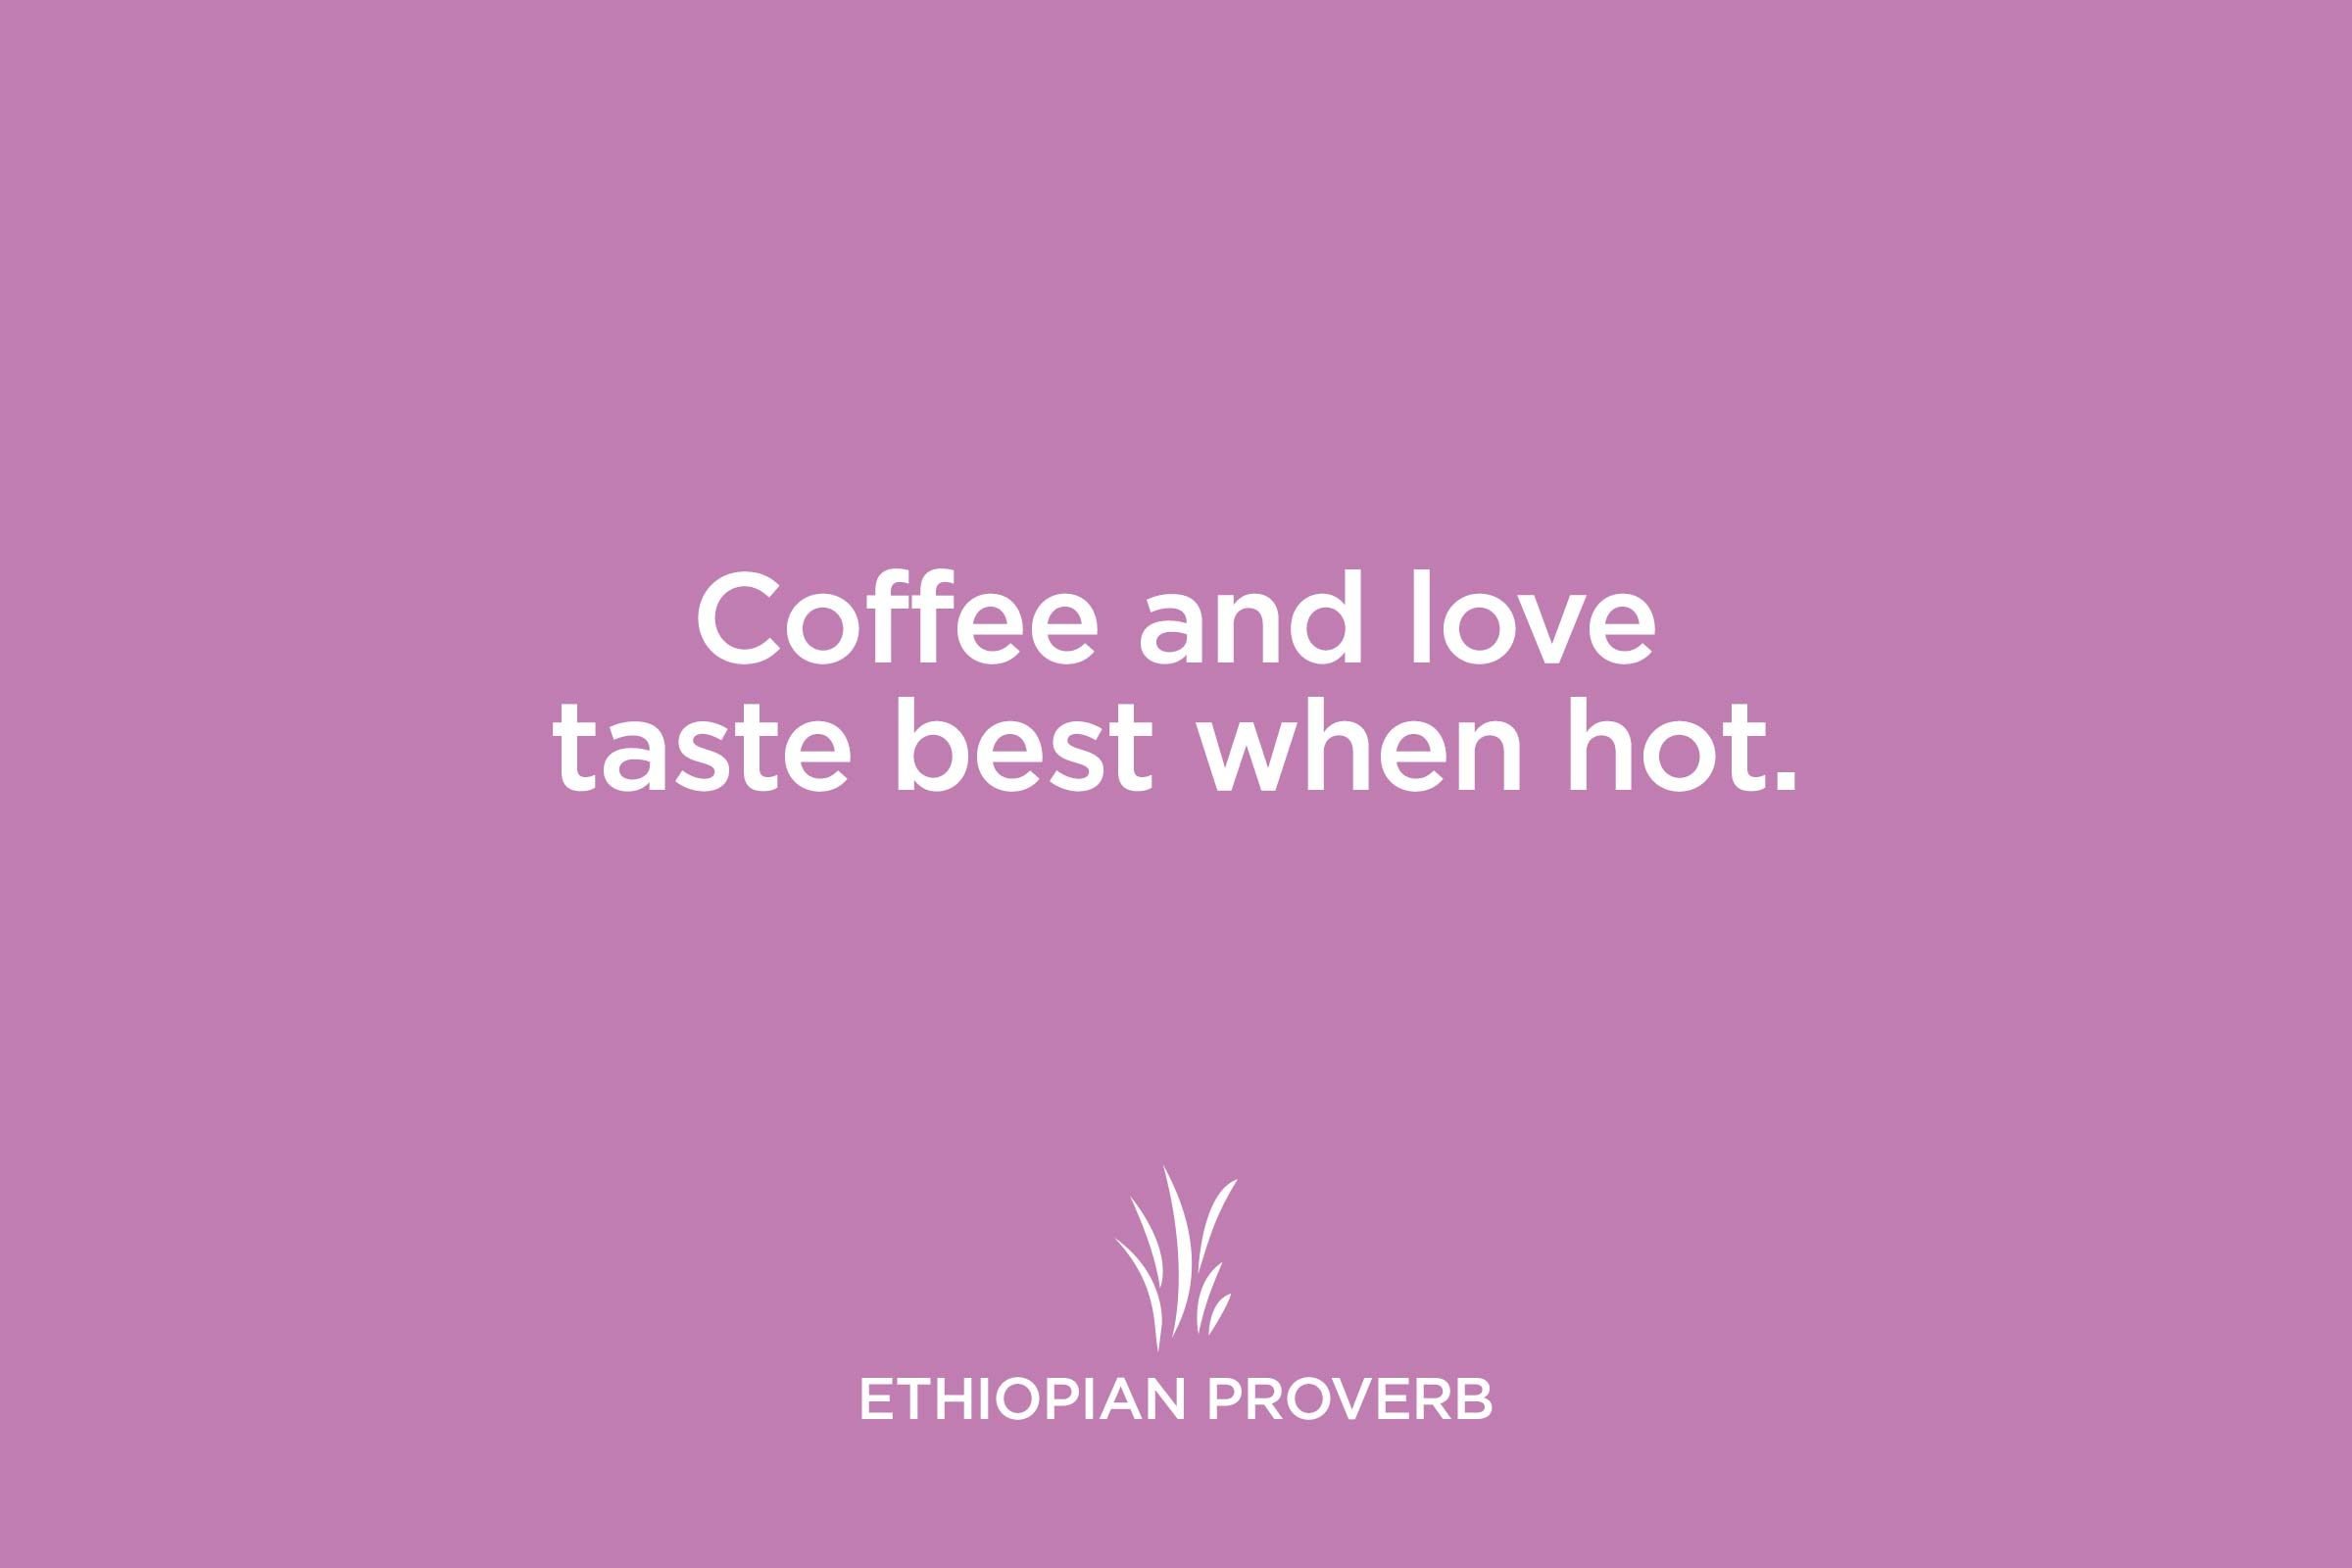 ethiopian proverb